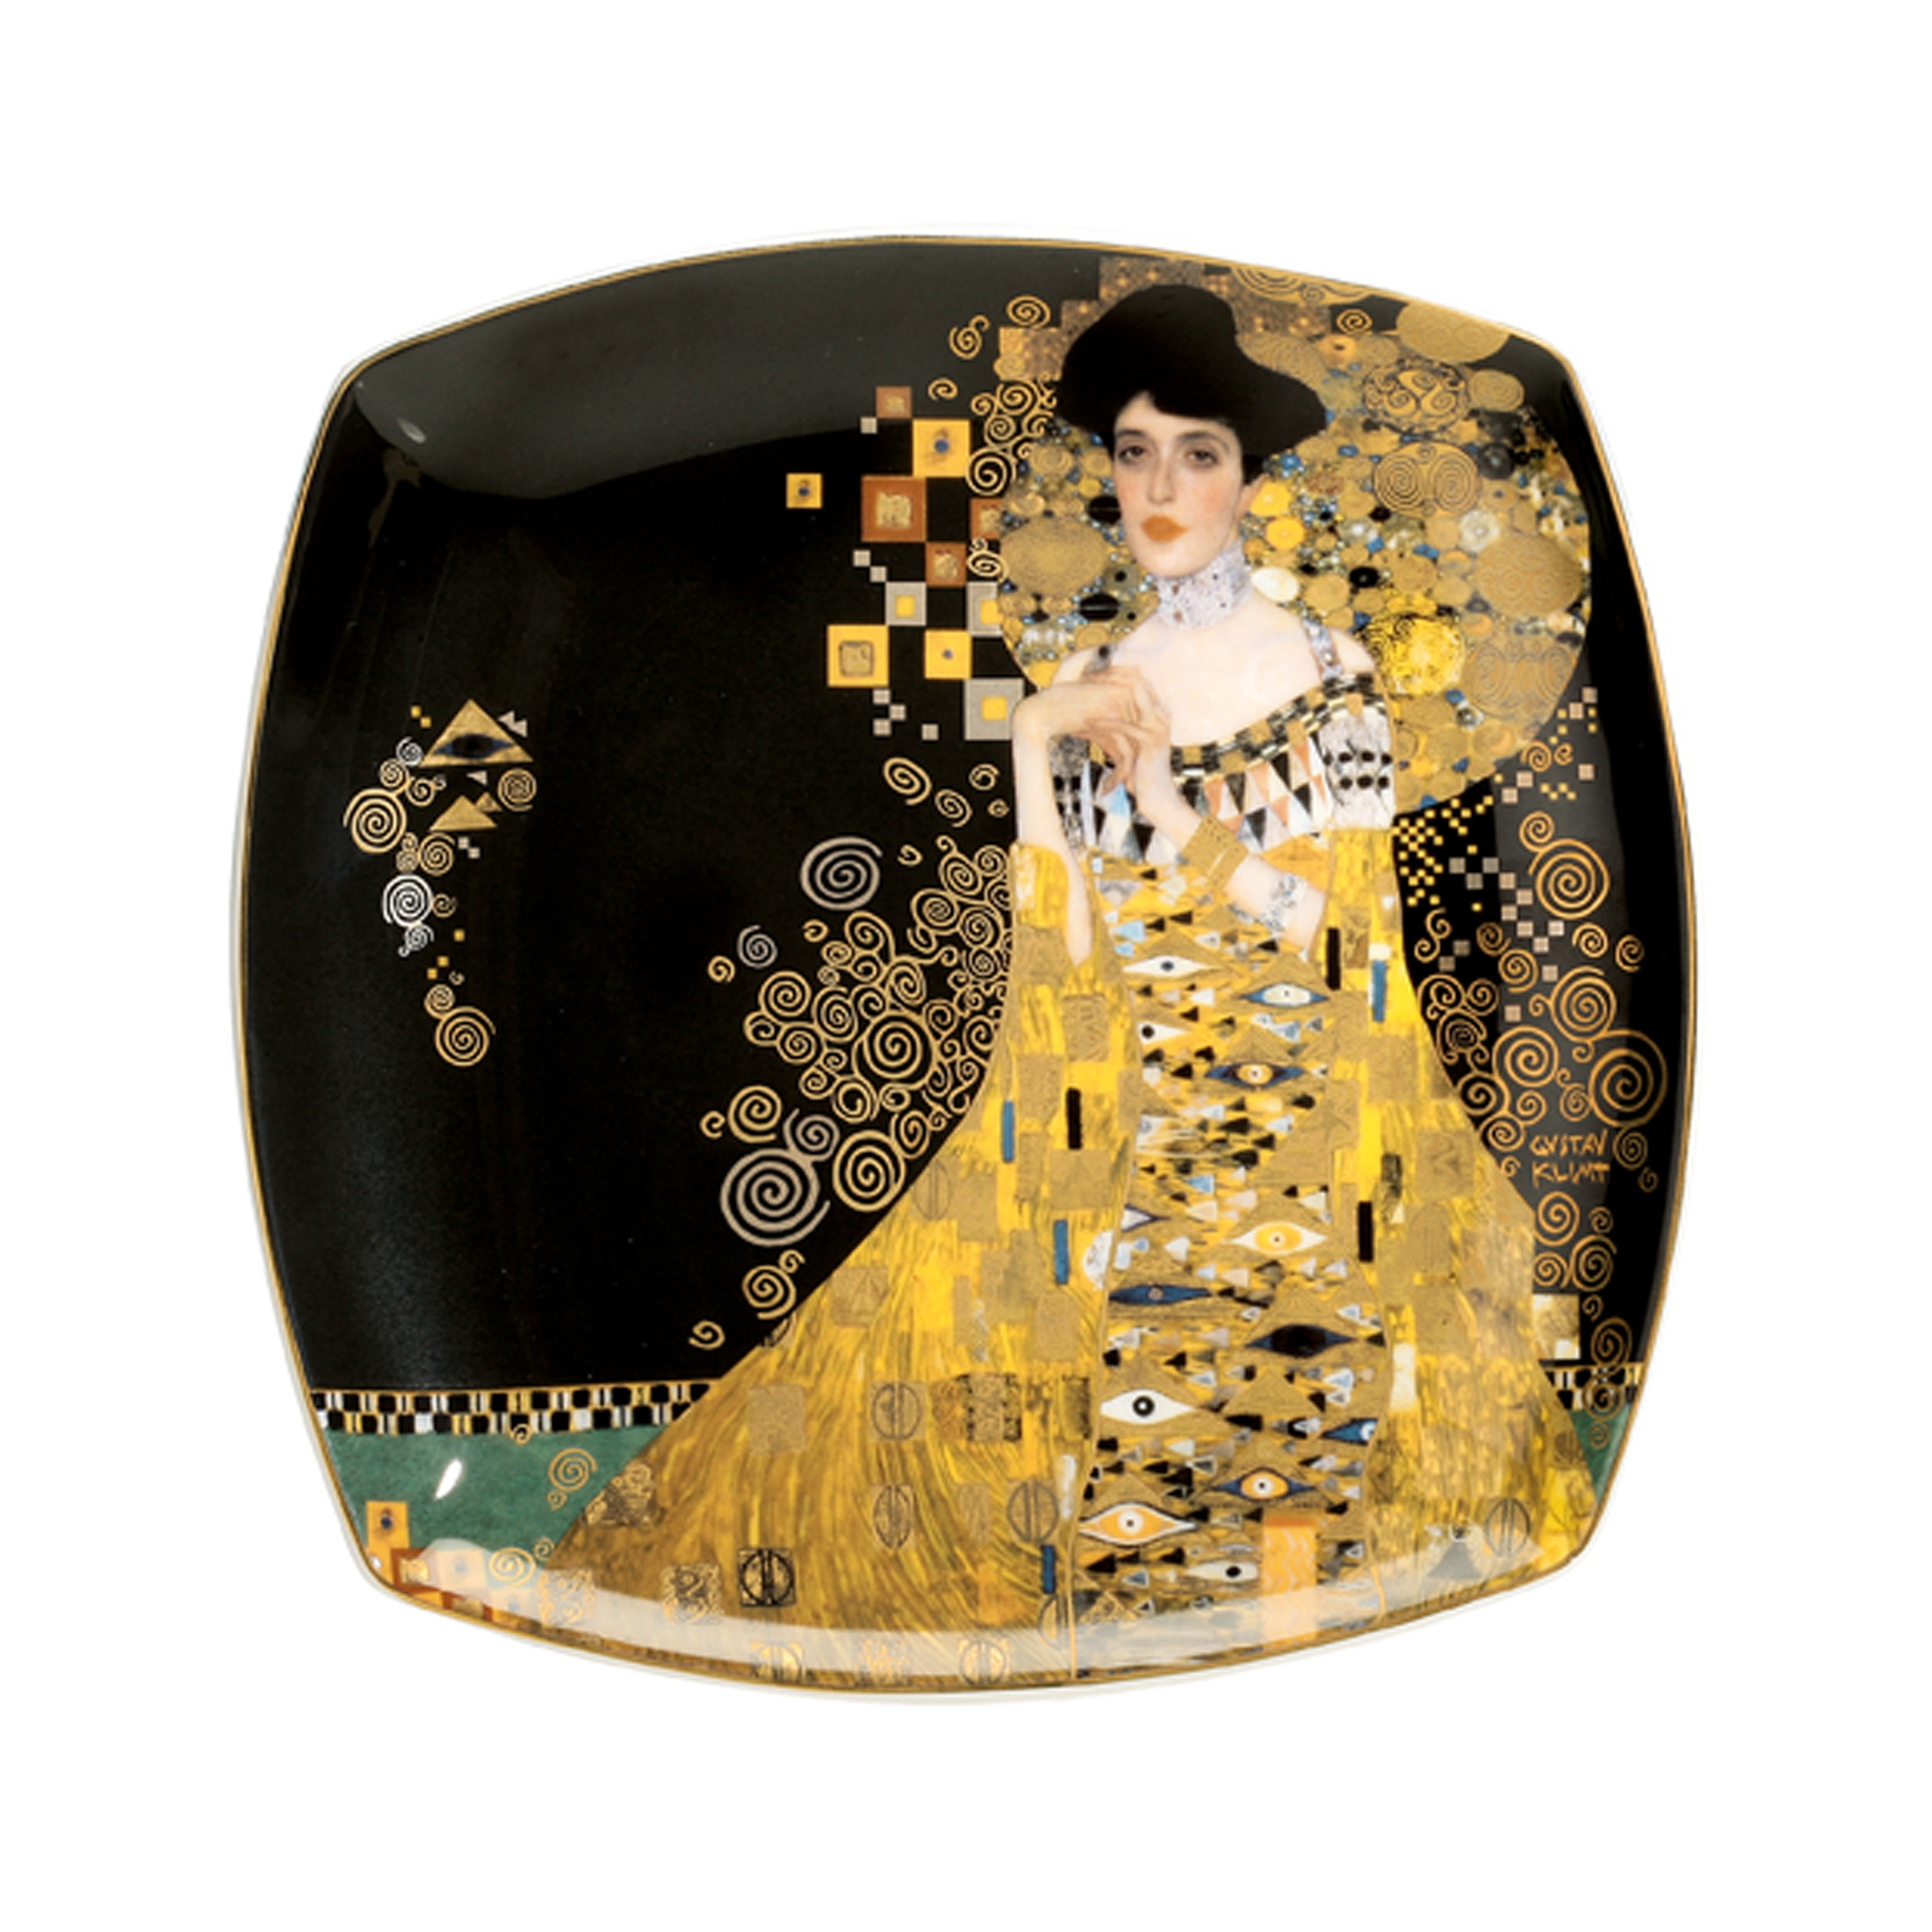 GOEBEL Adele Bloch-Bauer - Dessertteller Artis Orbis Gustav Klimt – 1 Stück